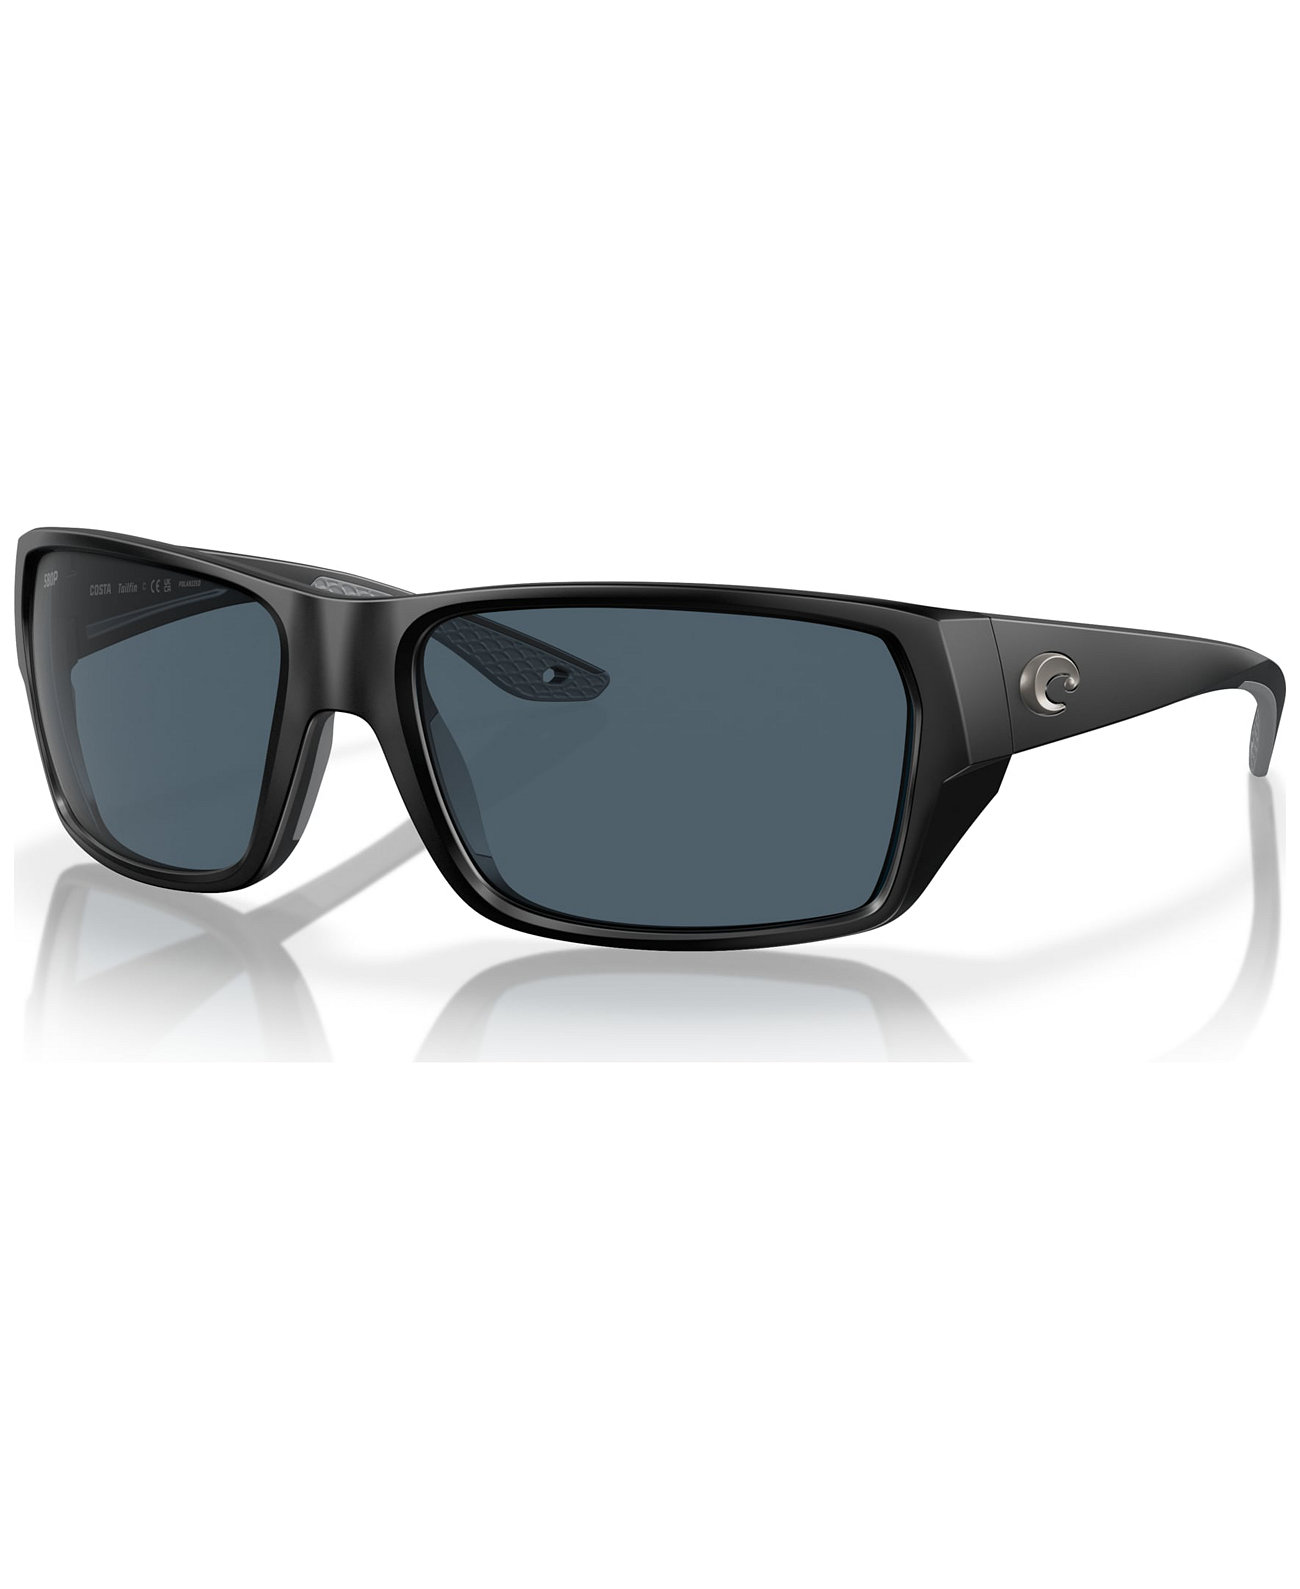 Men's Tailfin Polarized Sunglasses, Polar 6S9113 COSTA DEL MAR